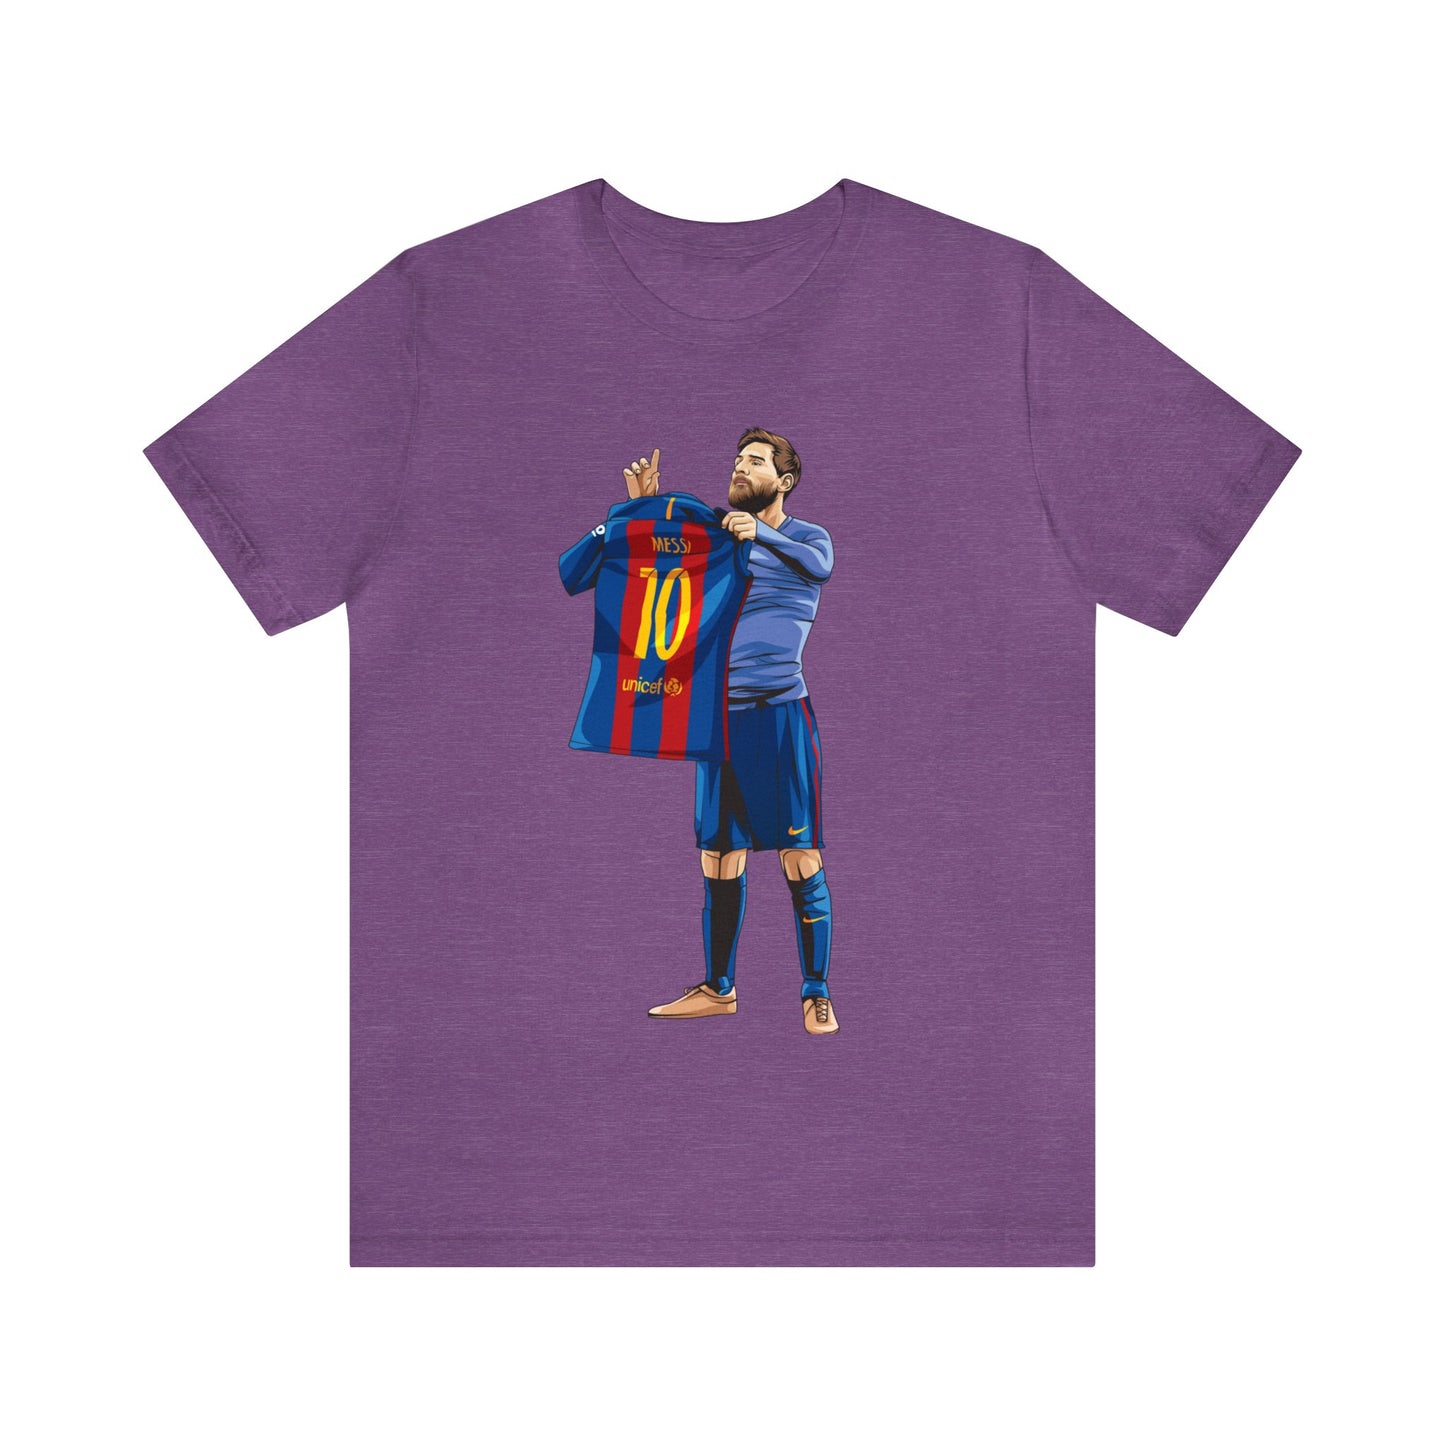 El Clasico Iconic Messi Celebration Unisex Jersey Short Sleeve Tee